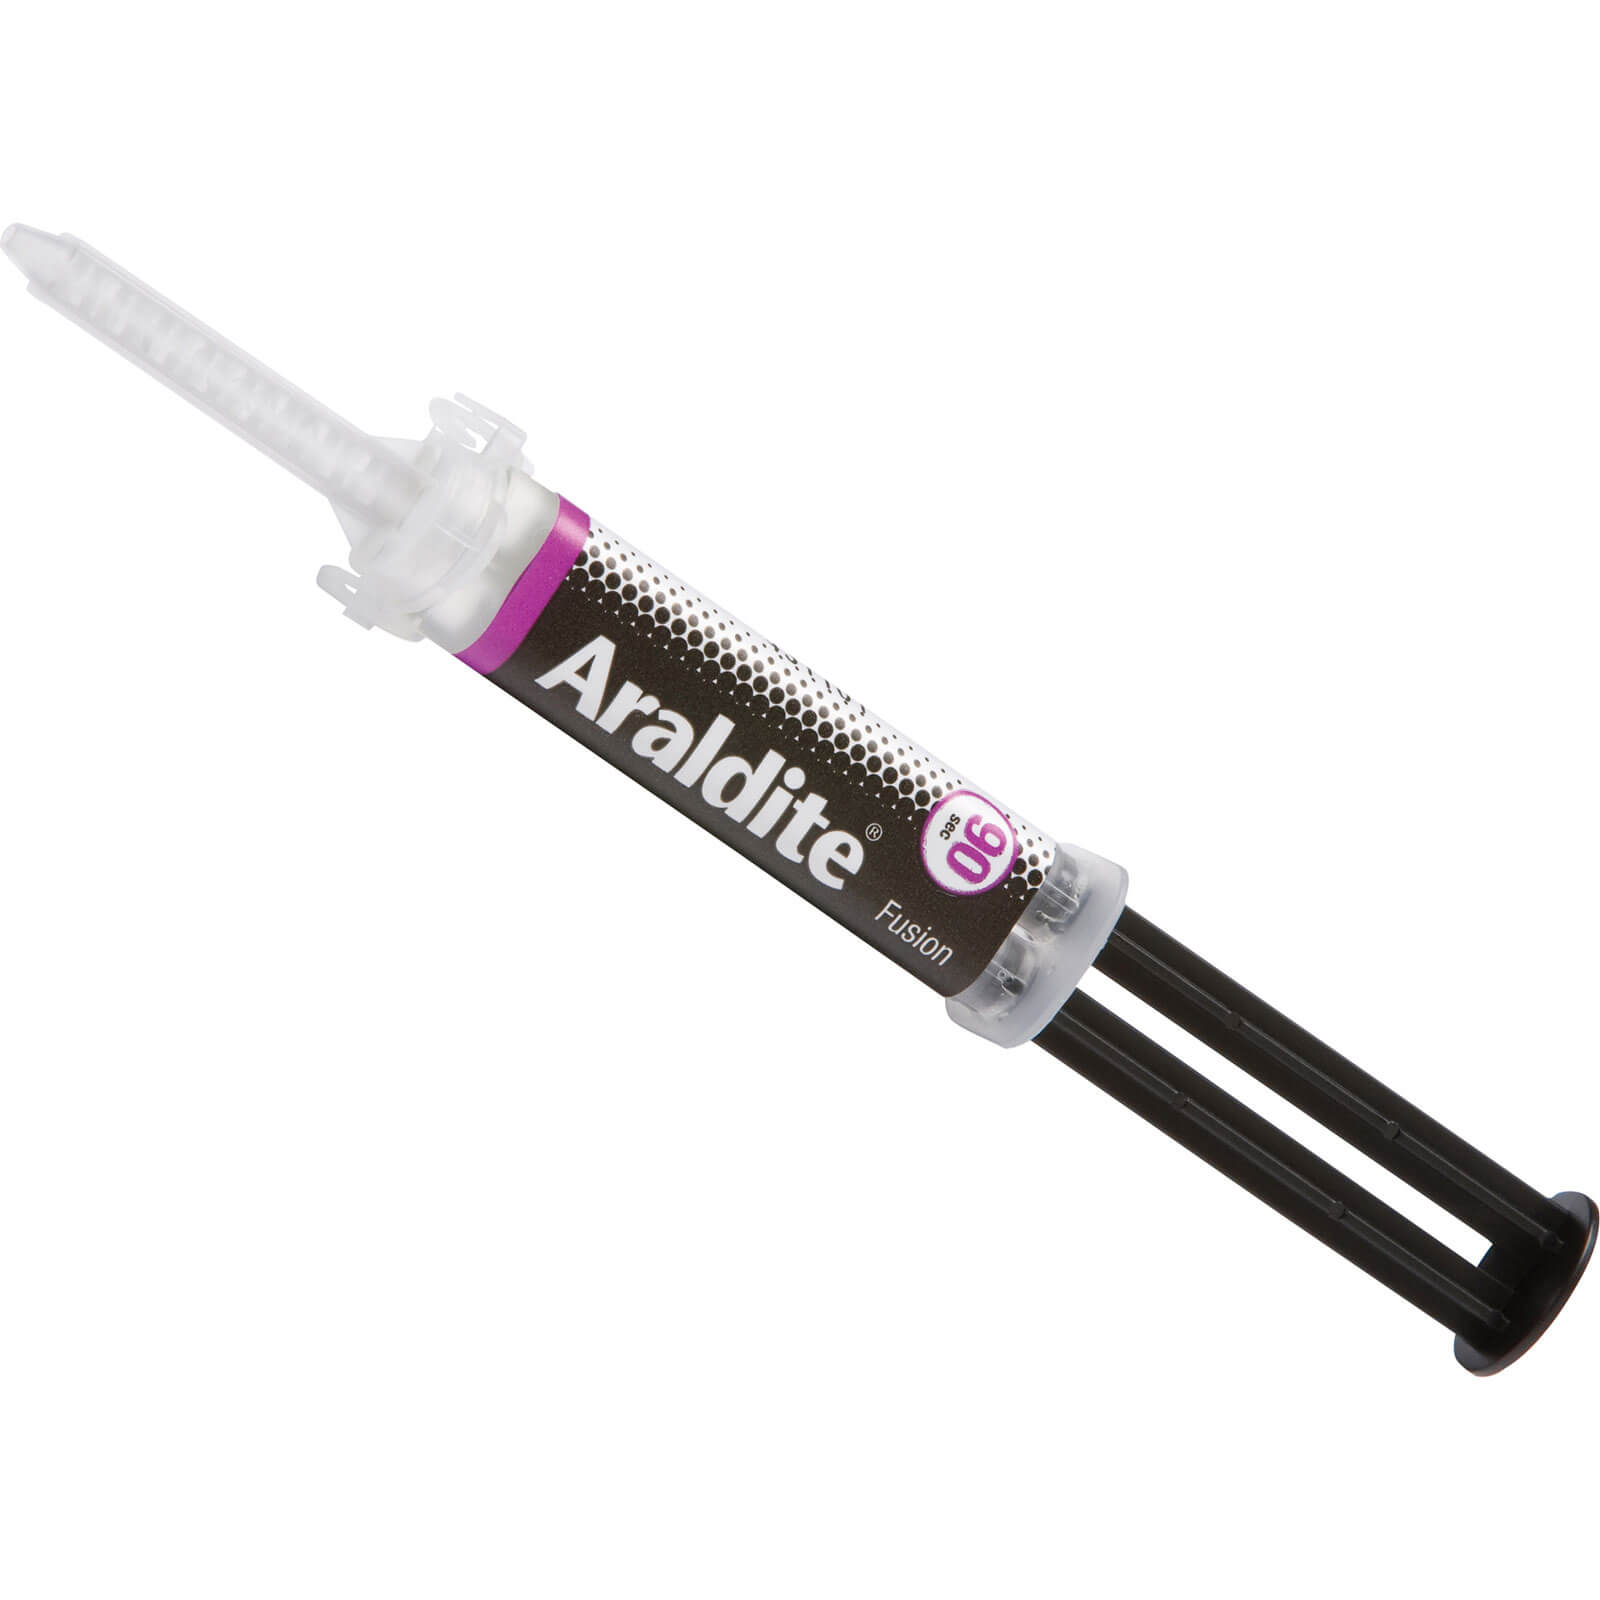 Image of Araldite Fusion Two Component Epoxy Adhesive Syringe 3g